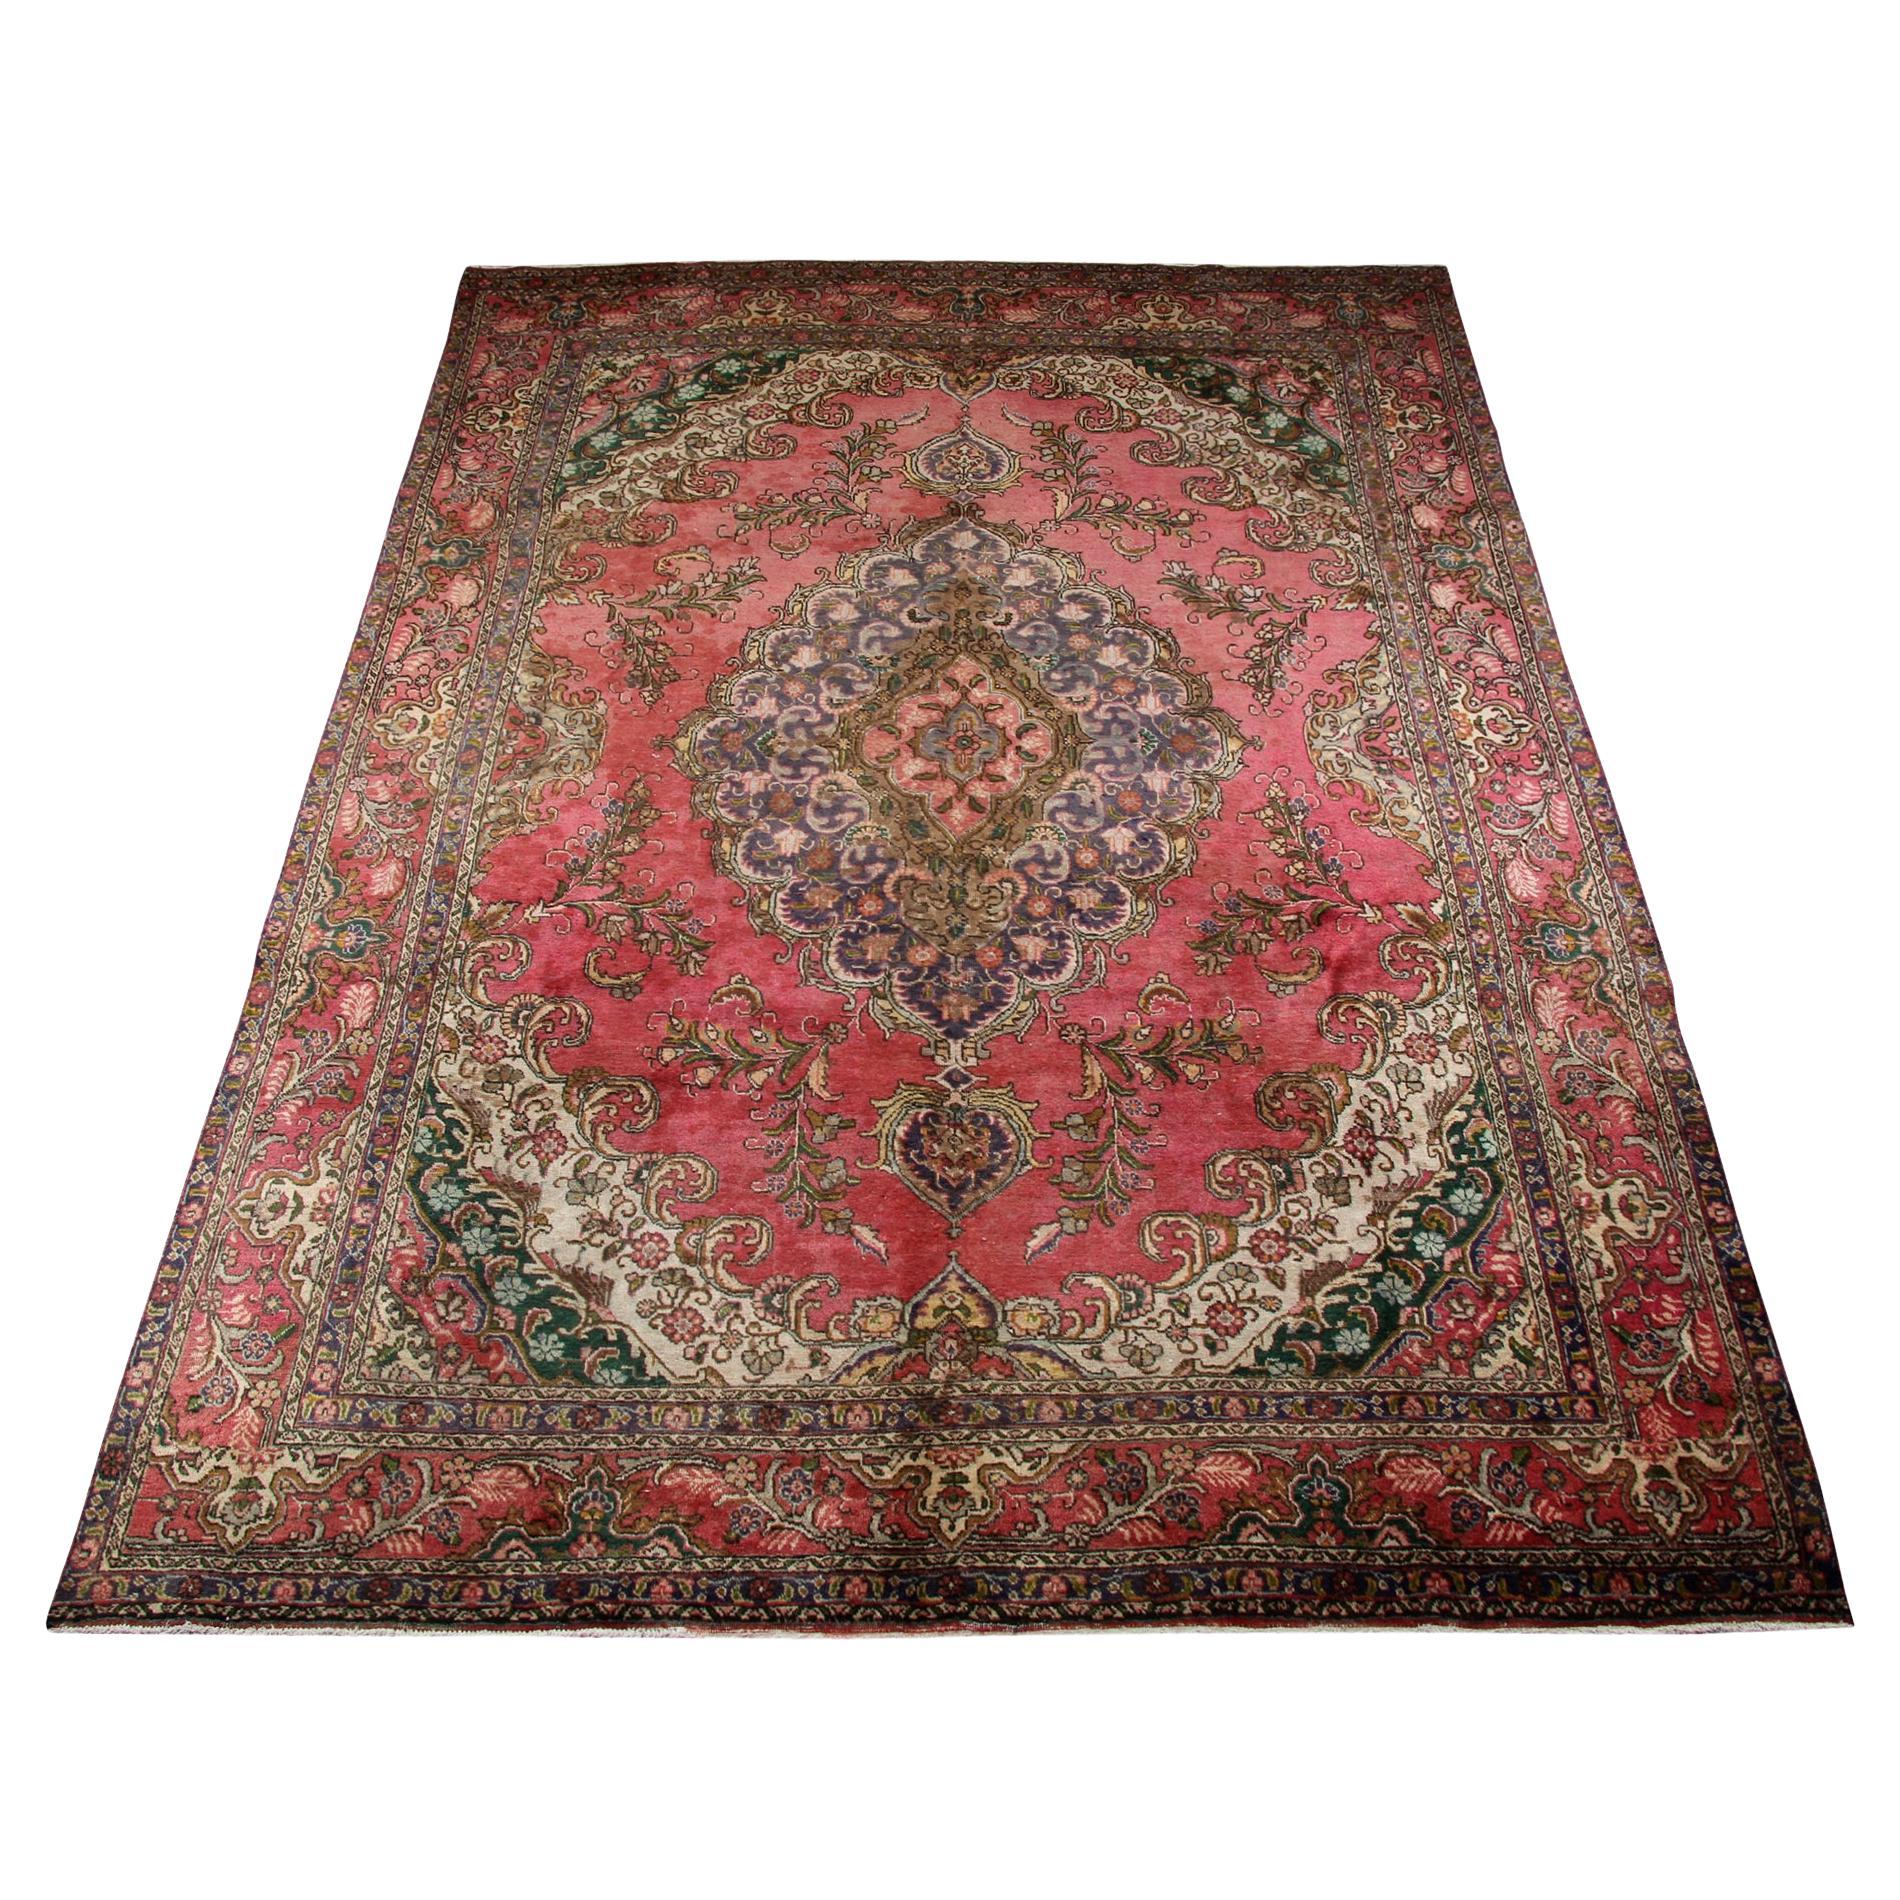 Großer türkischer Vintage-Teppich aus roter Wolle, handgefertigt